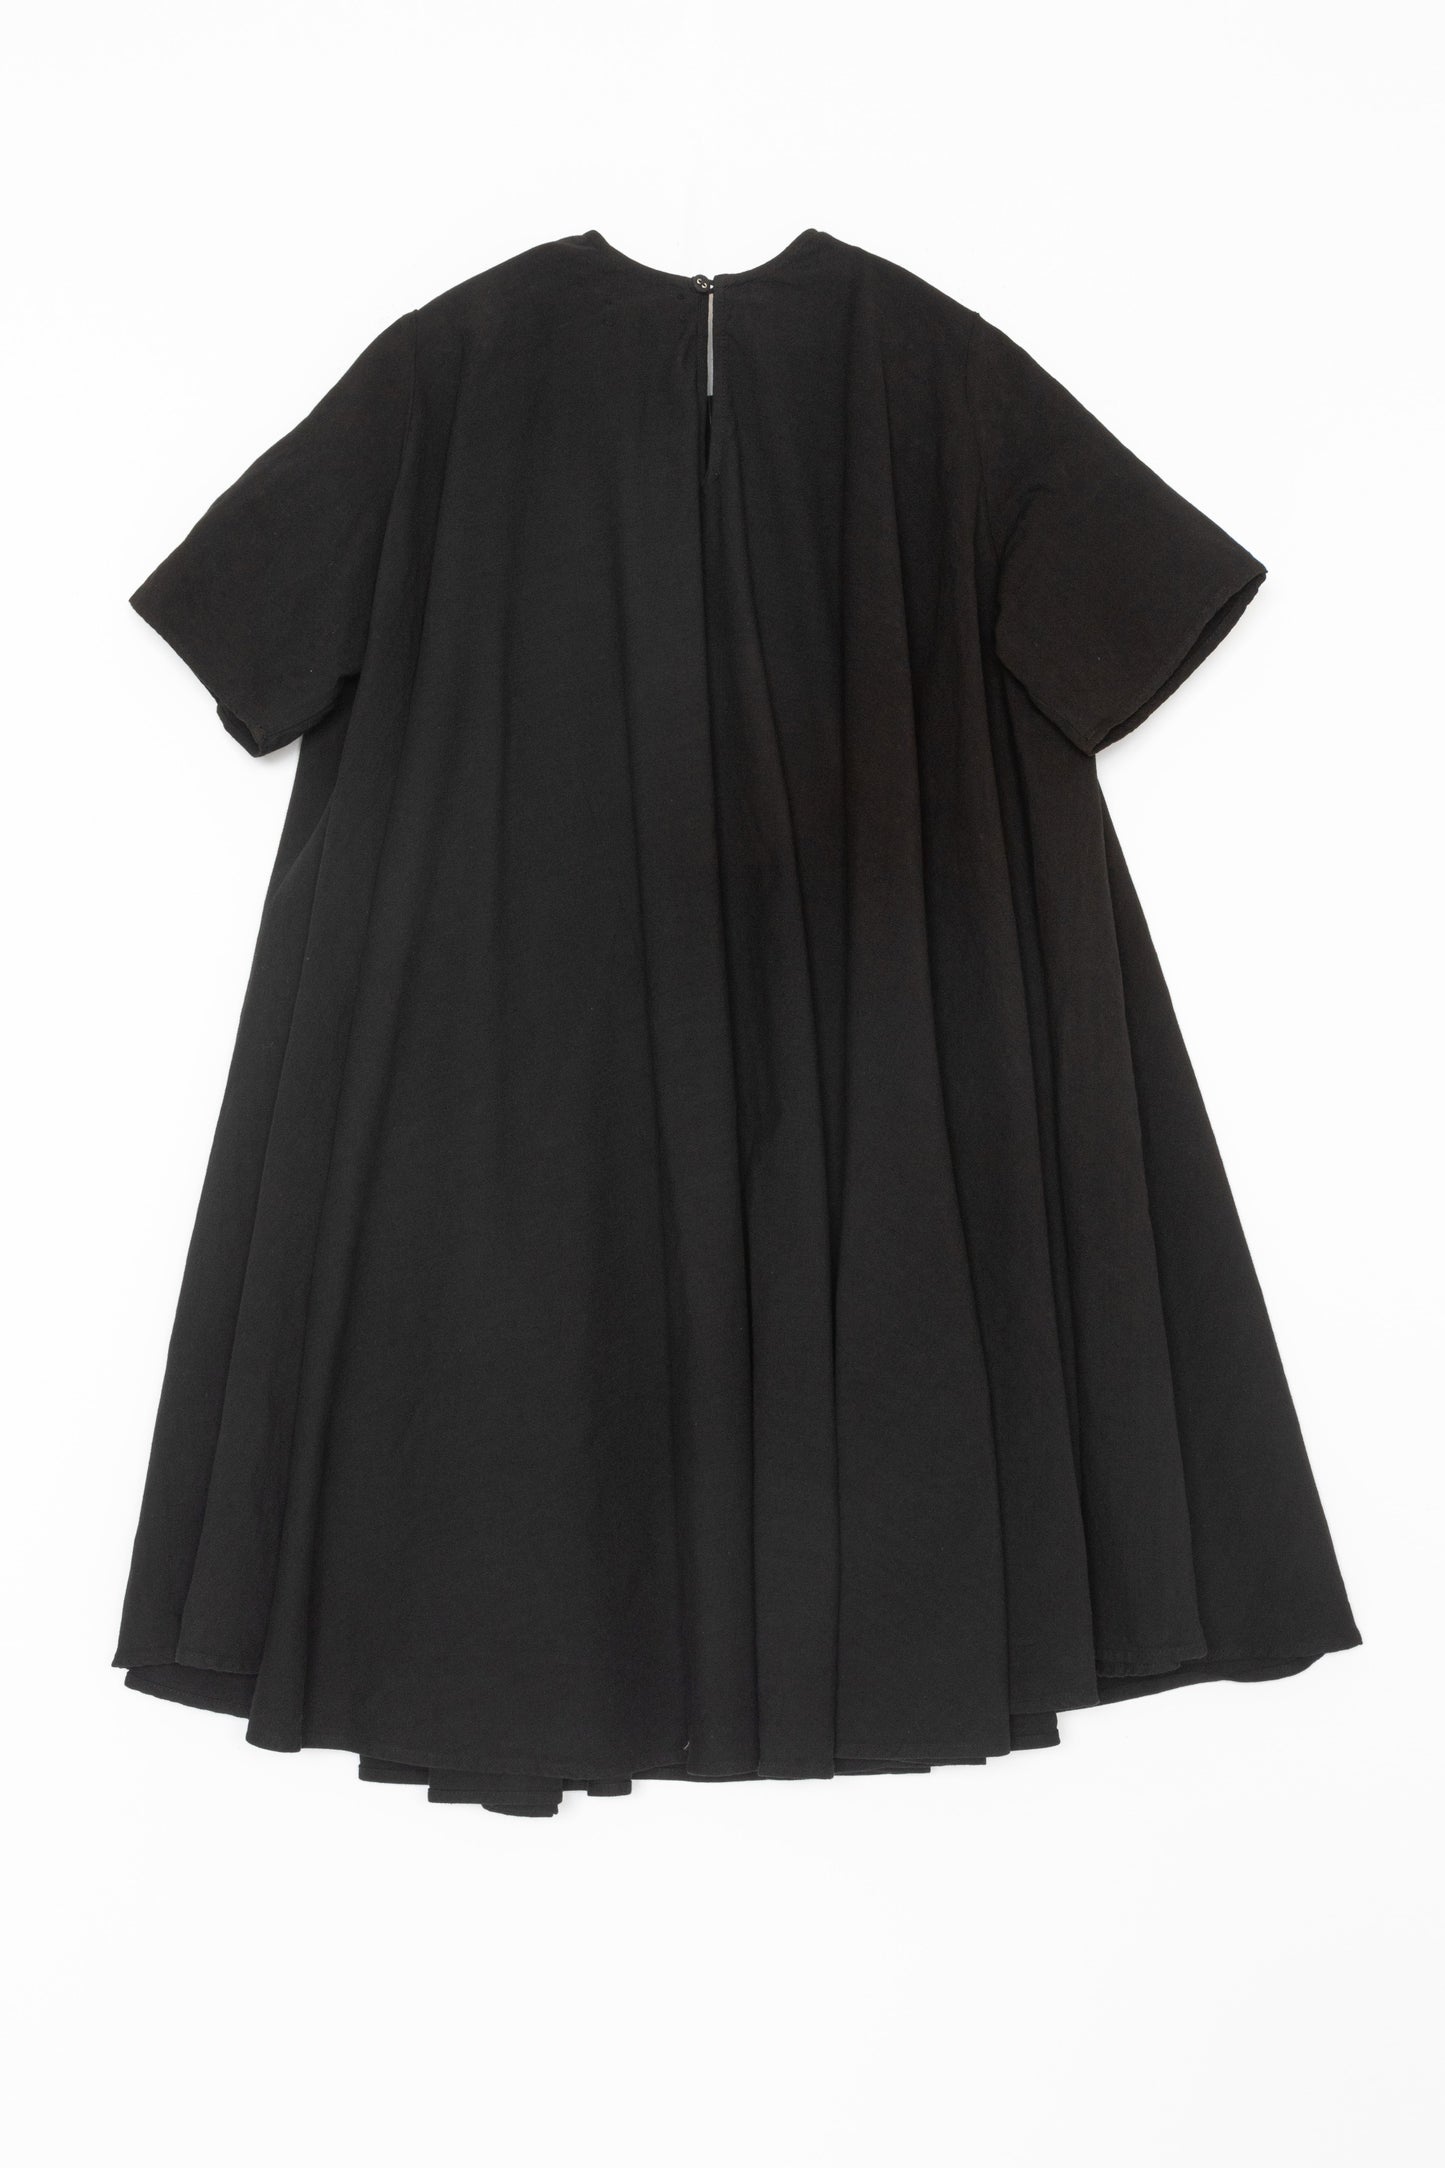 [Whiteread] Dress 15 - Ebony Linen